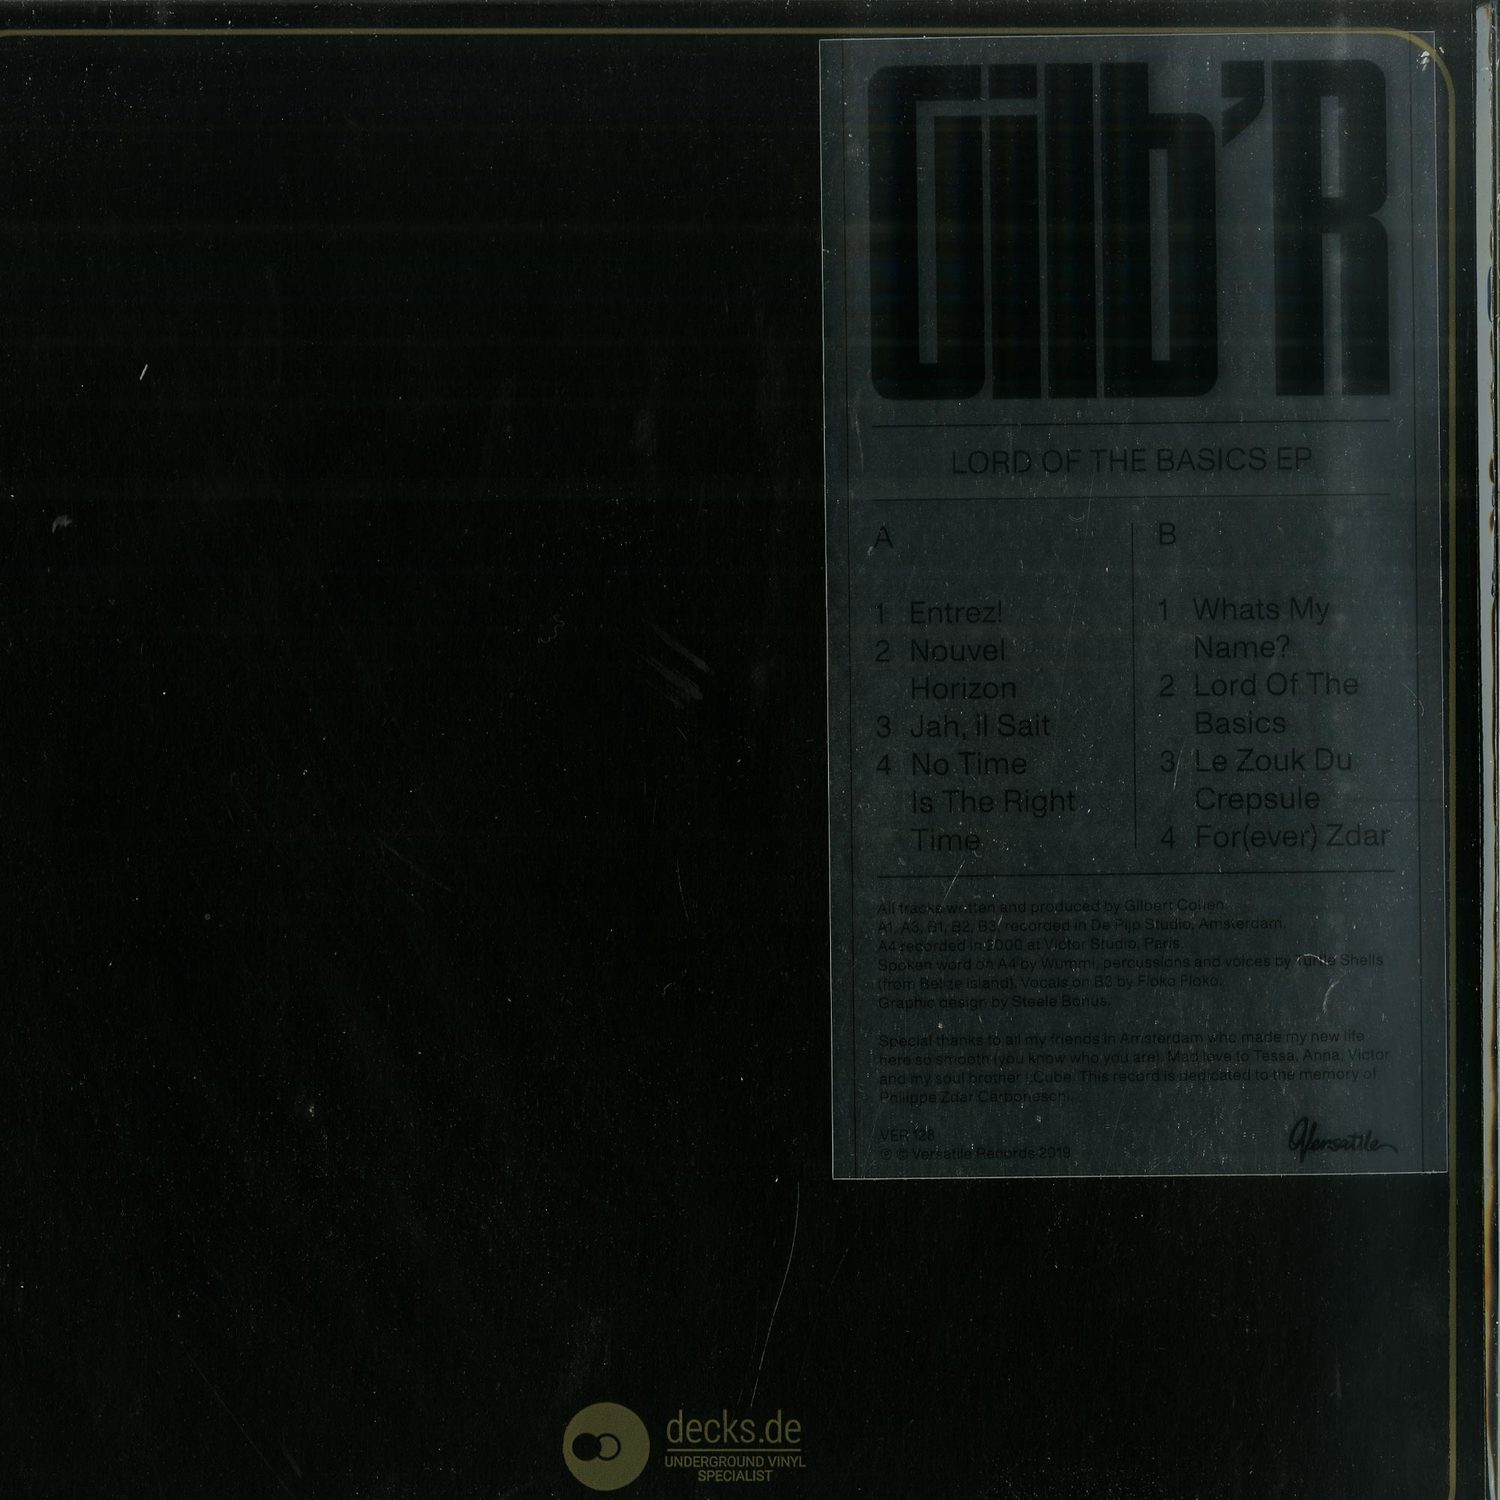 Gilb R - LORD OF THE BASICS EP